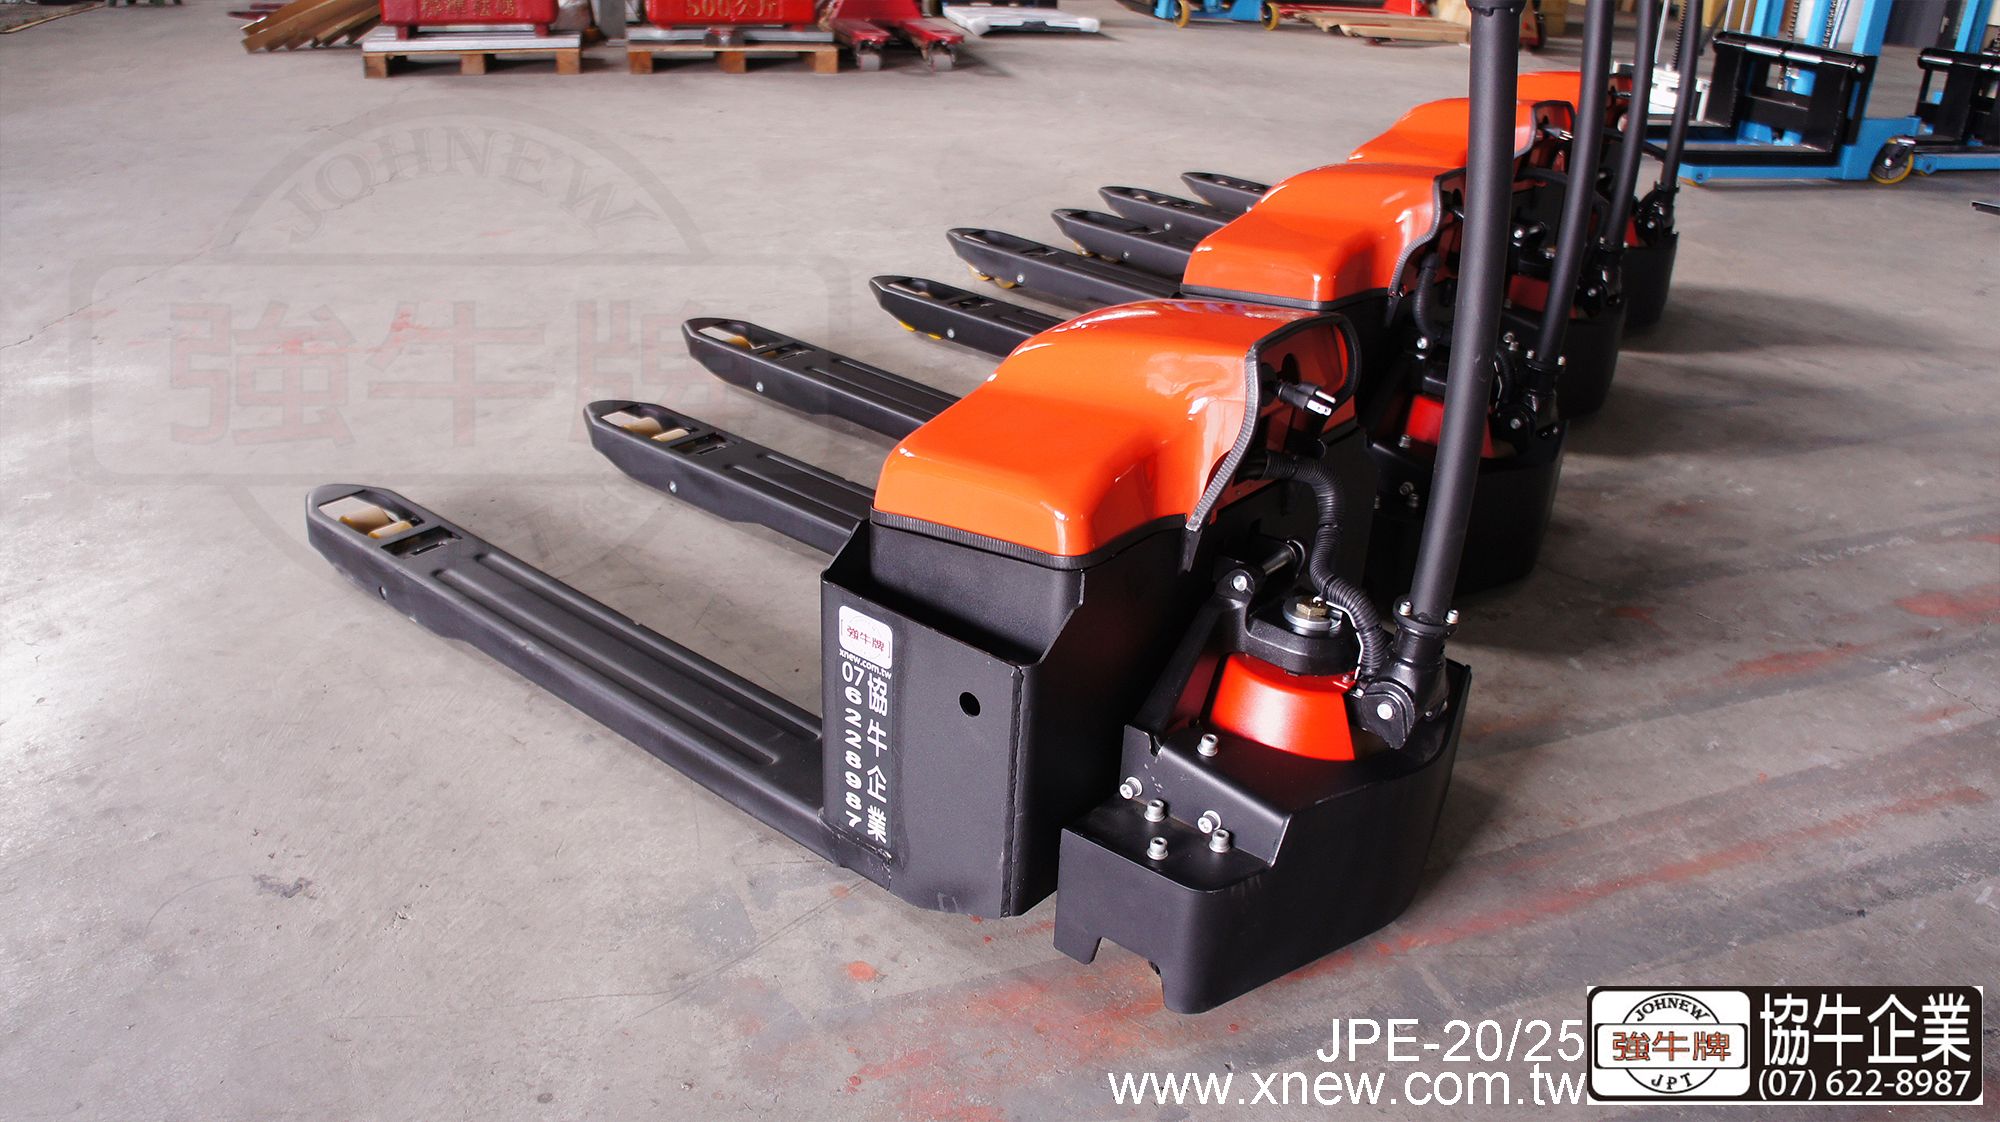 協牛 強牛牌 JPE-25 JPE-20 重巧型全電動拖板車 無段變速系統